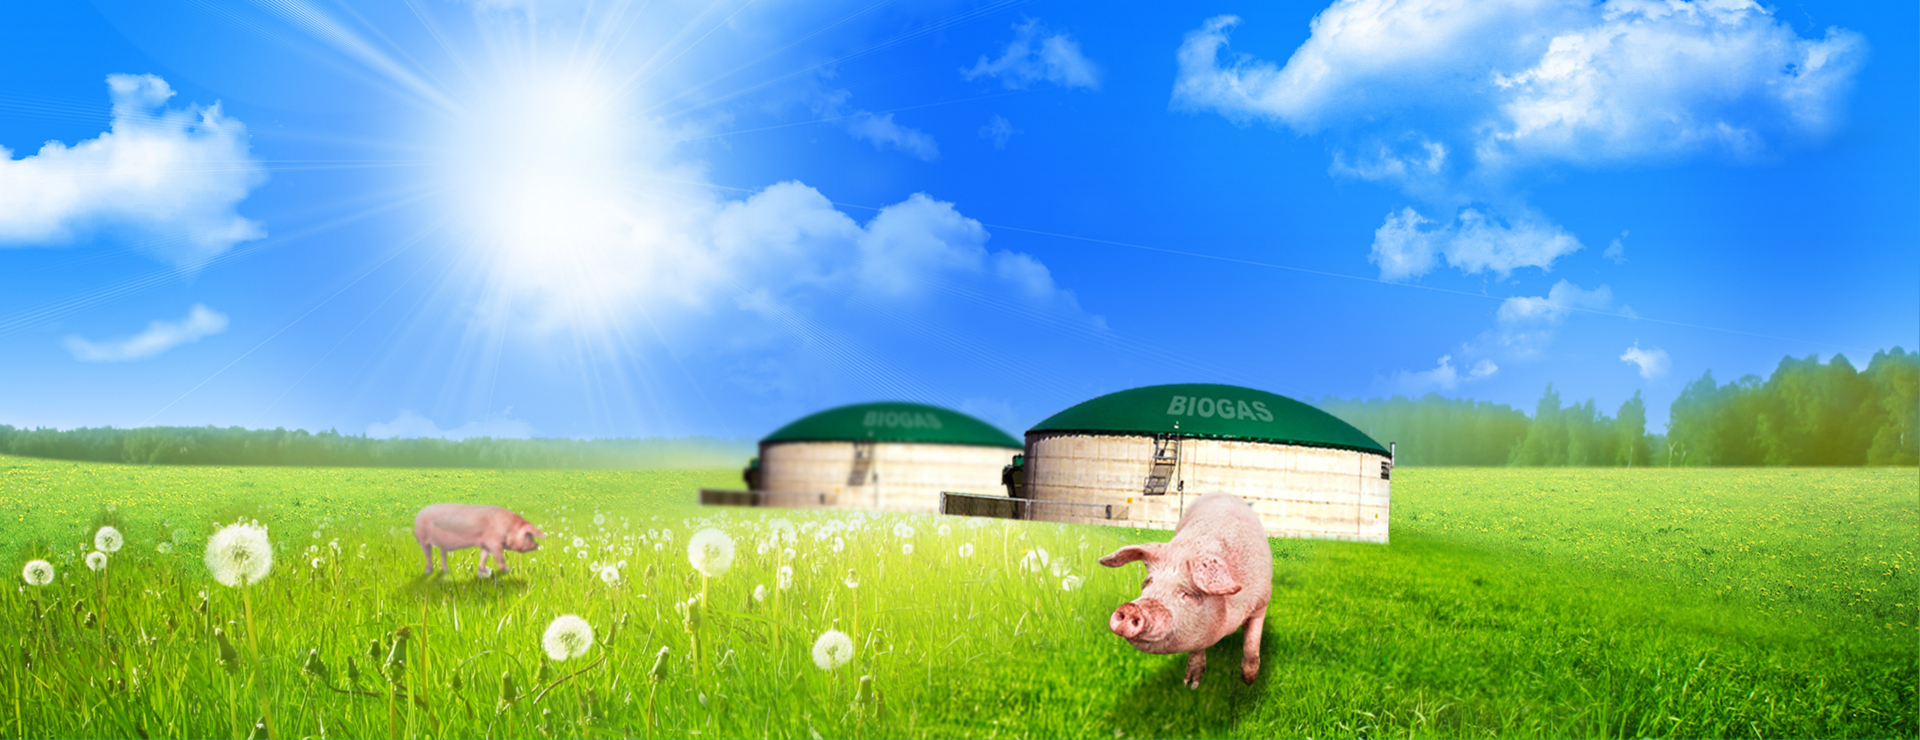 沼回家園 升級傳統豬圈飼養方式 將生質廢棄物厭氧發酵、降低臭味 創造綠色畜牧、守護你我家園